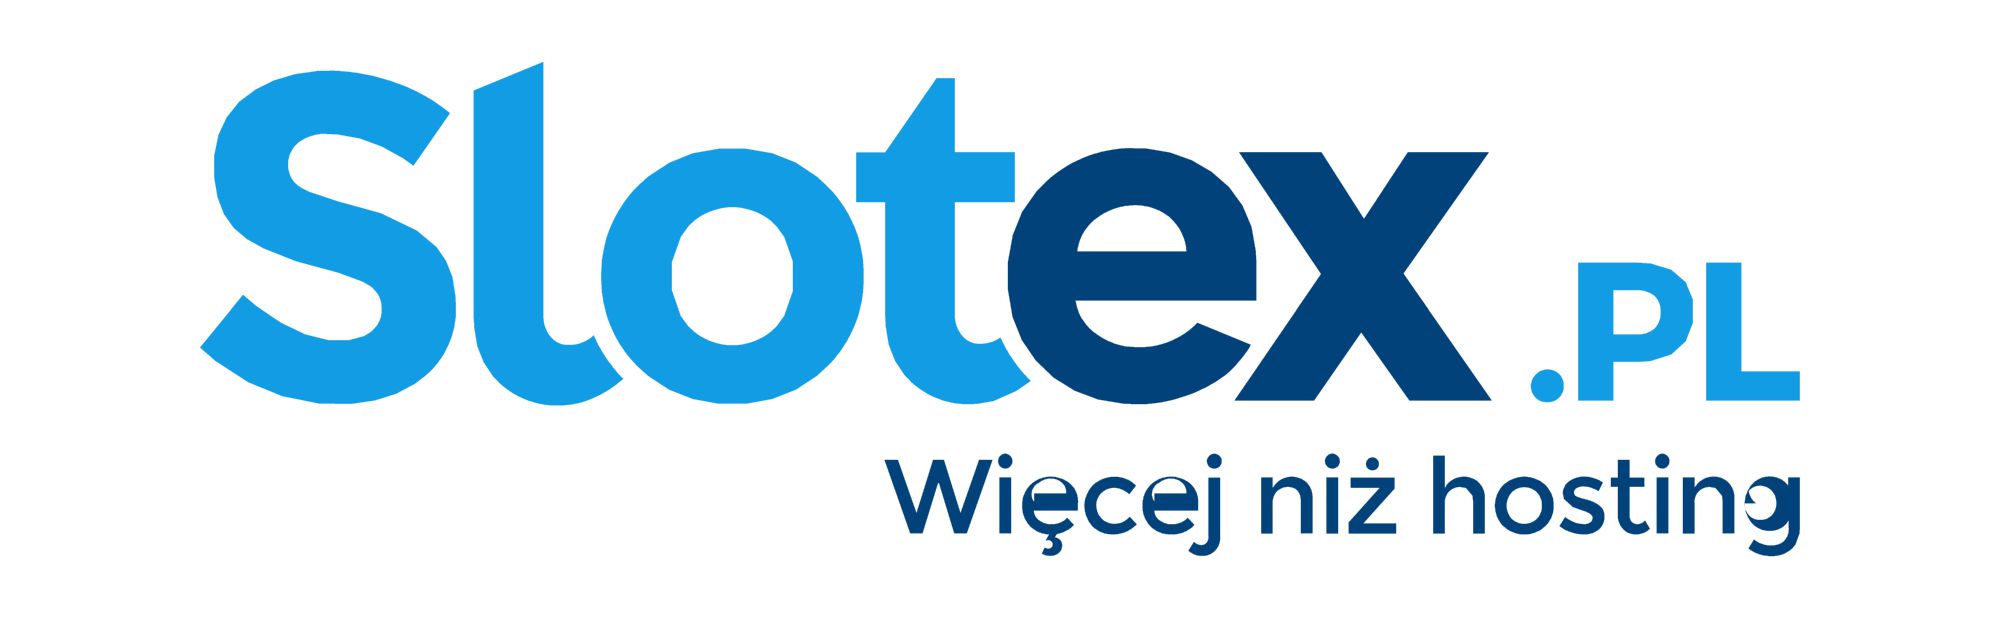 Slotex.pl